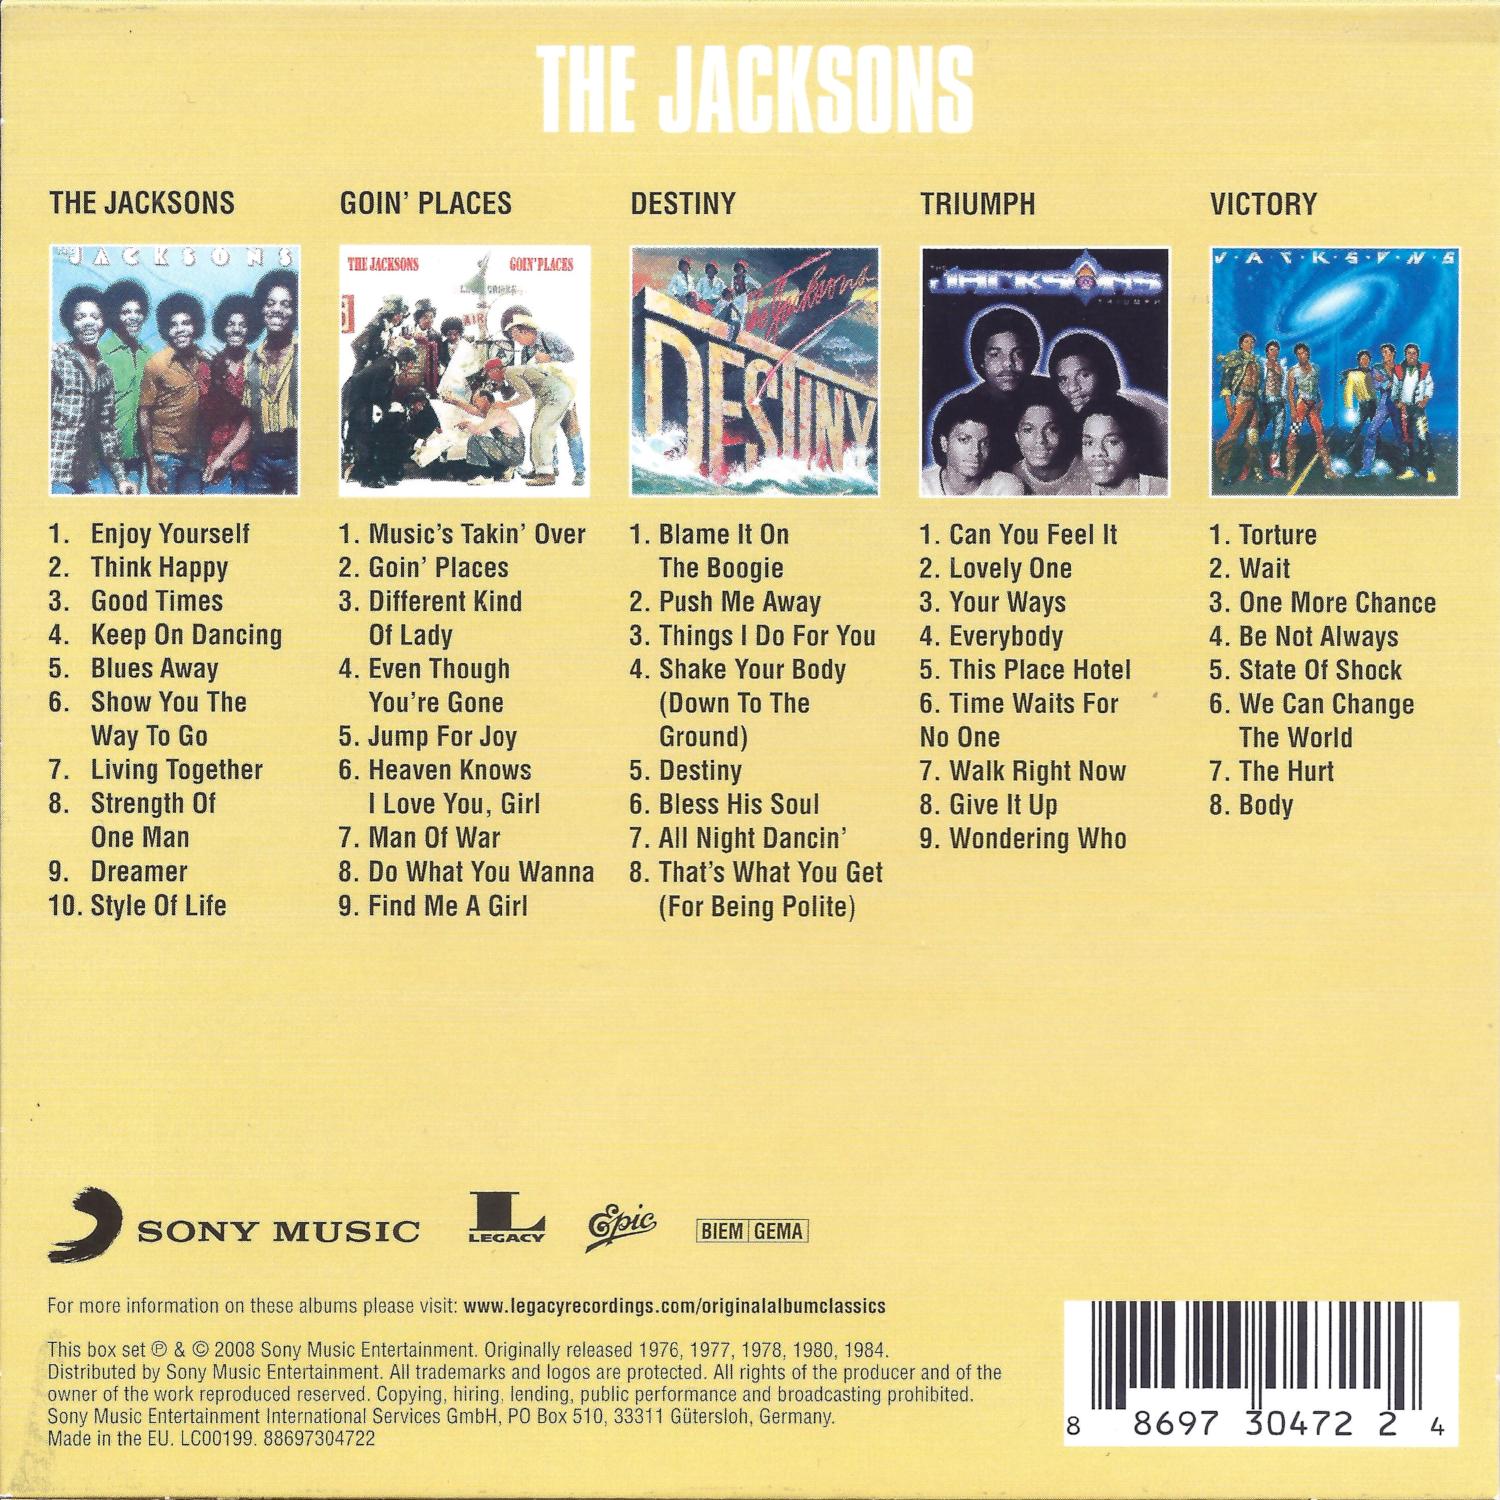 Release “Original Album Classics” by The Jacksons - Cover Art 